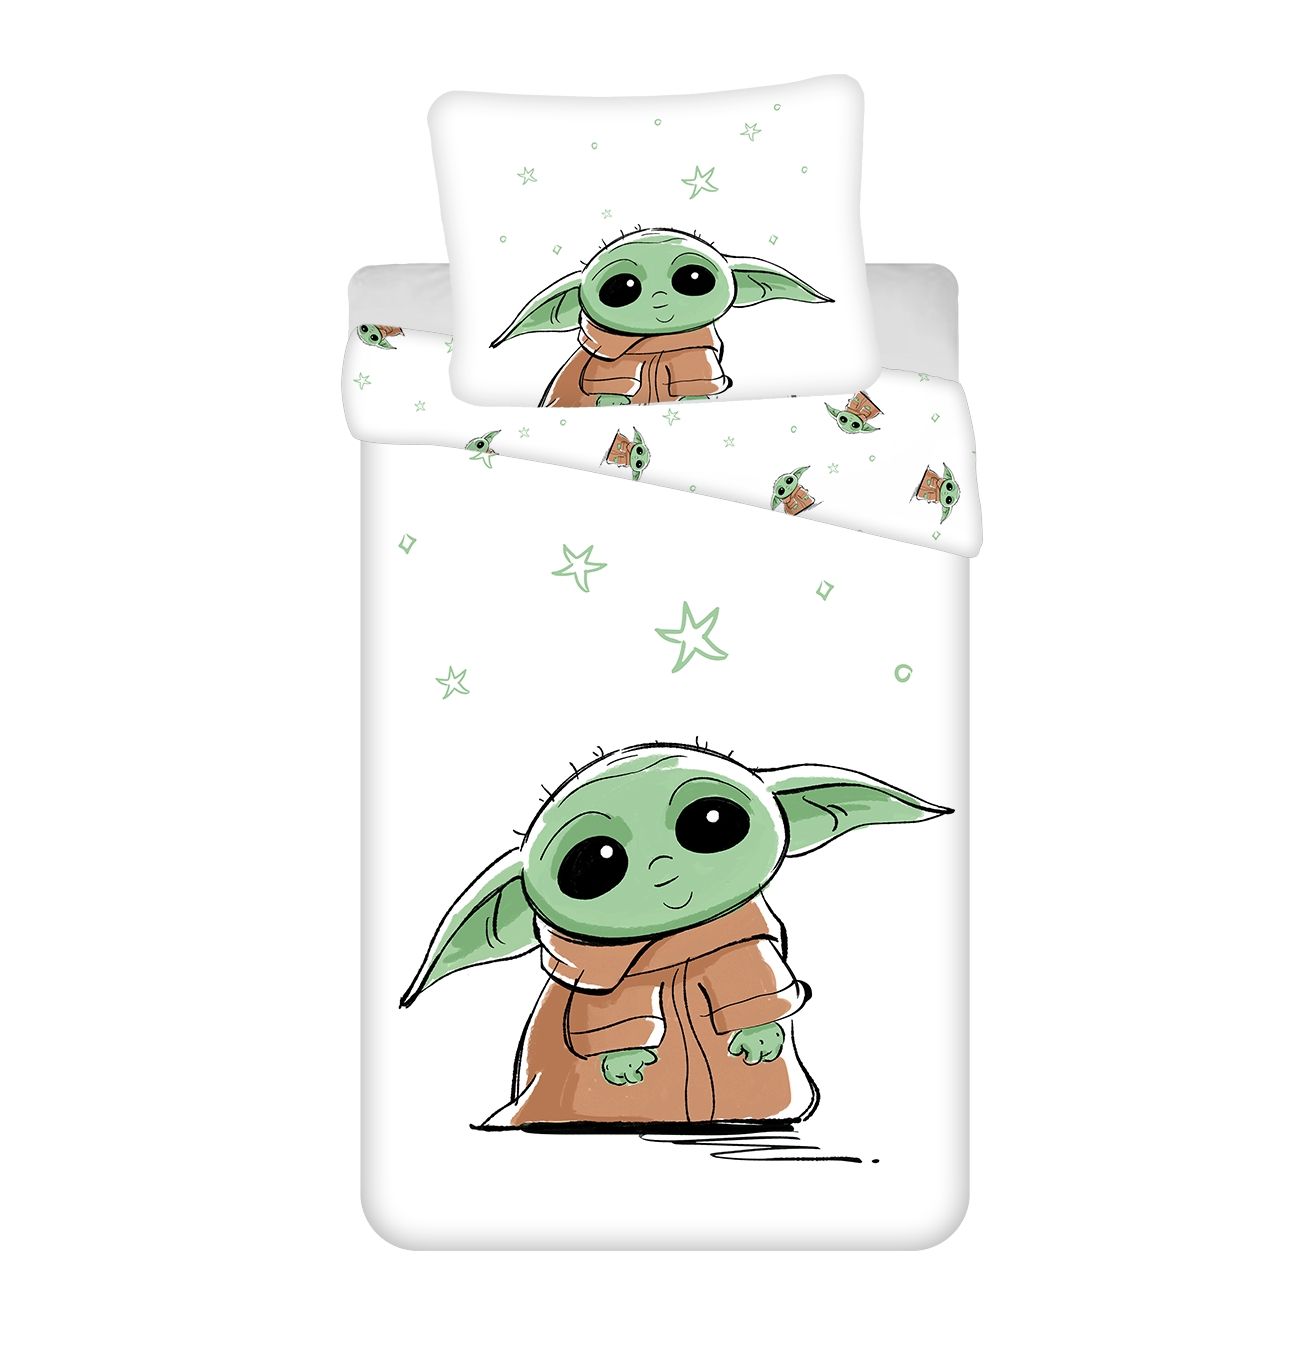 Obliečky bavlna Star Wars Baby Yoda Jerry Fabrics